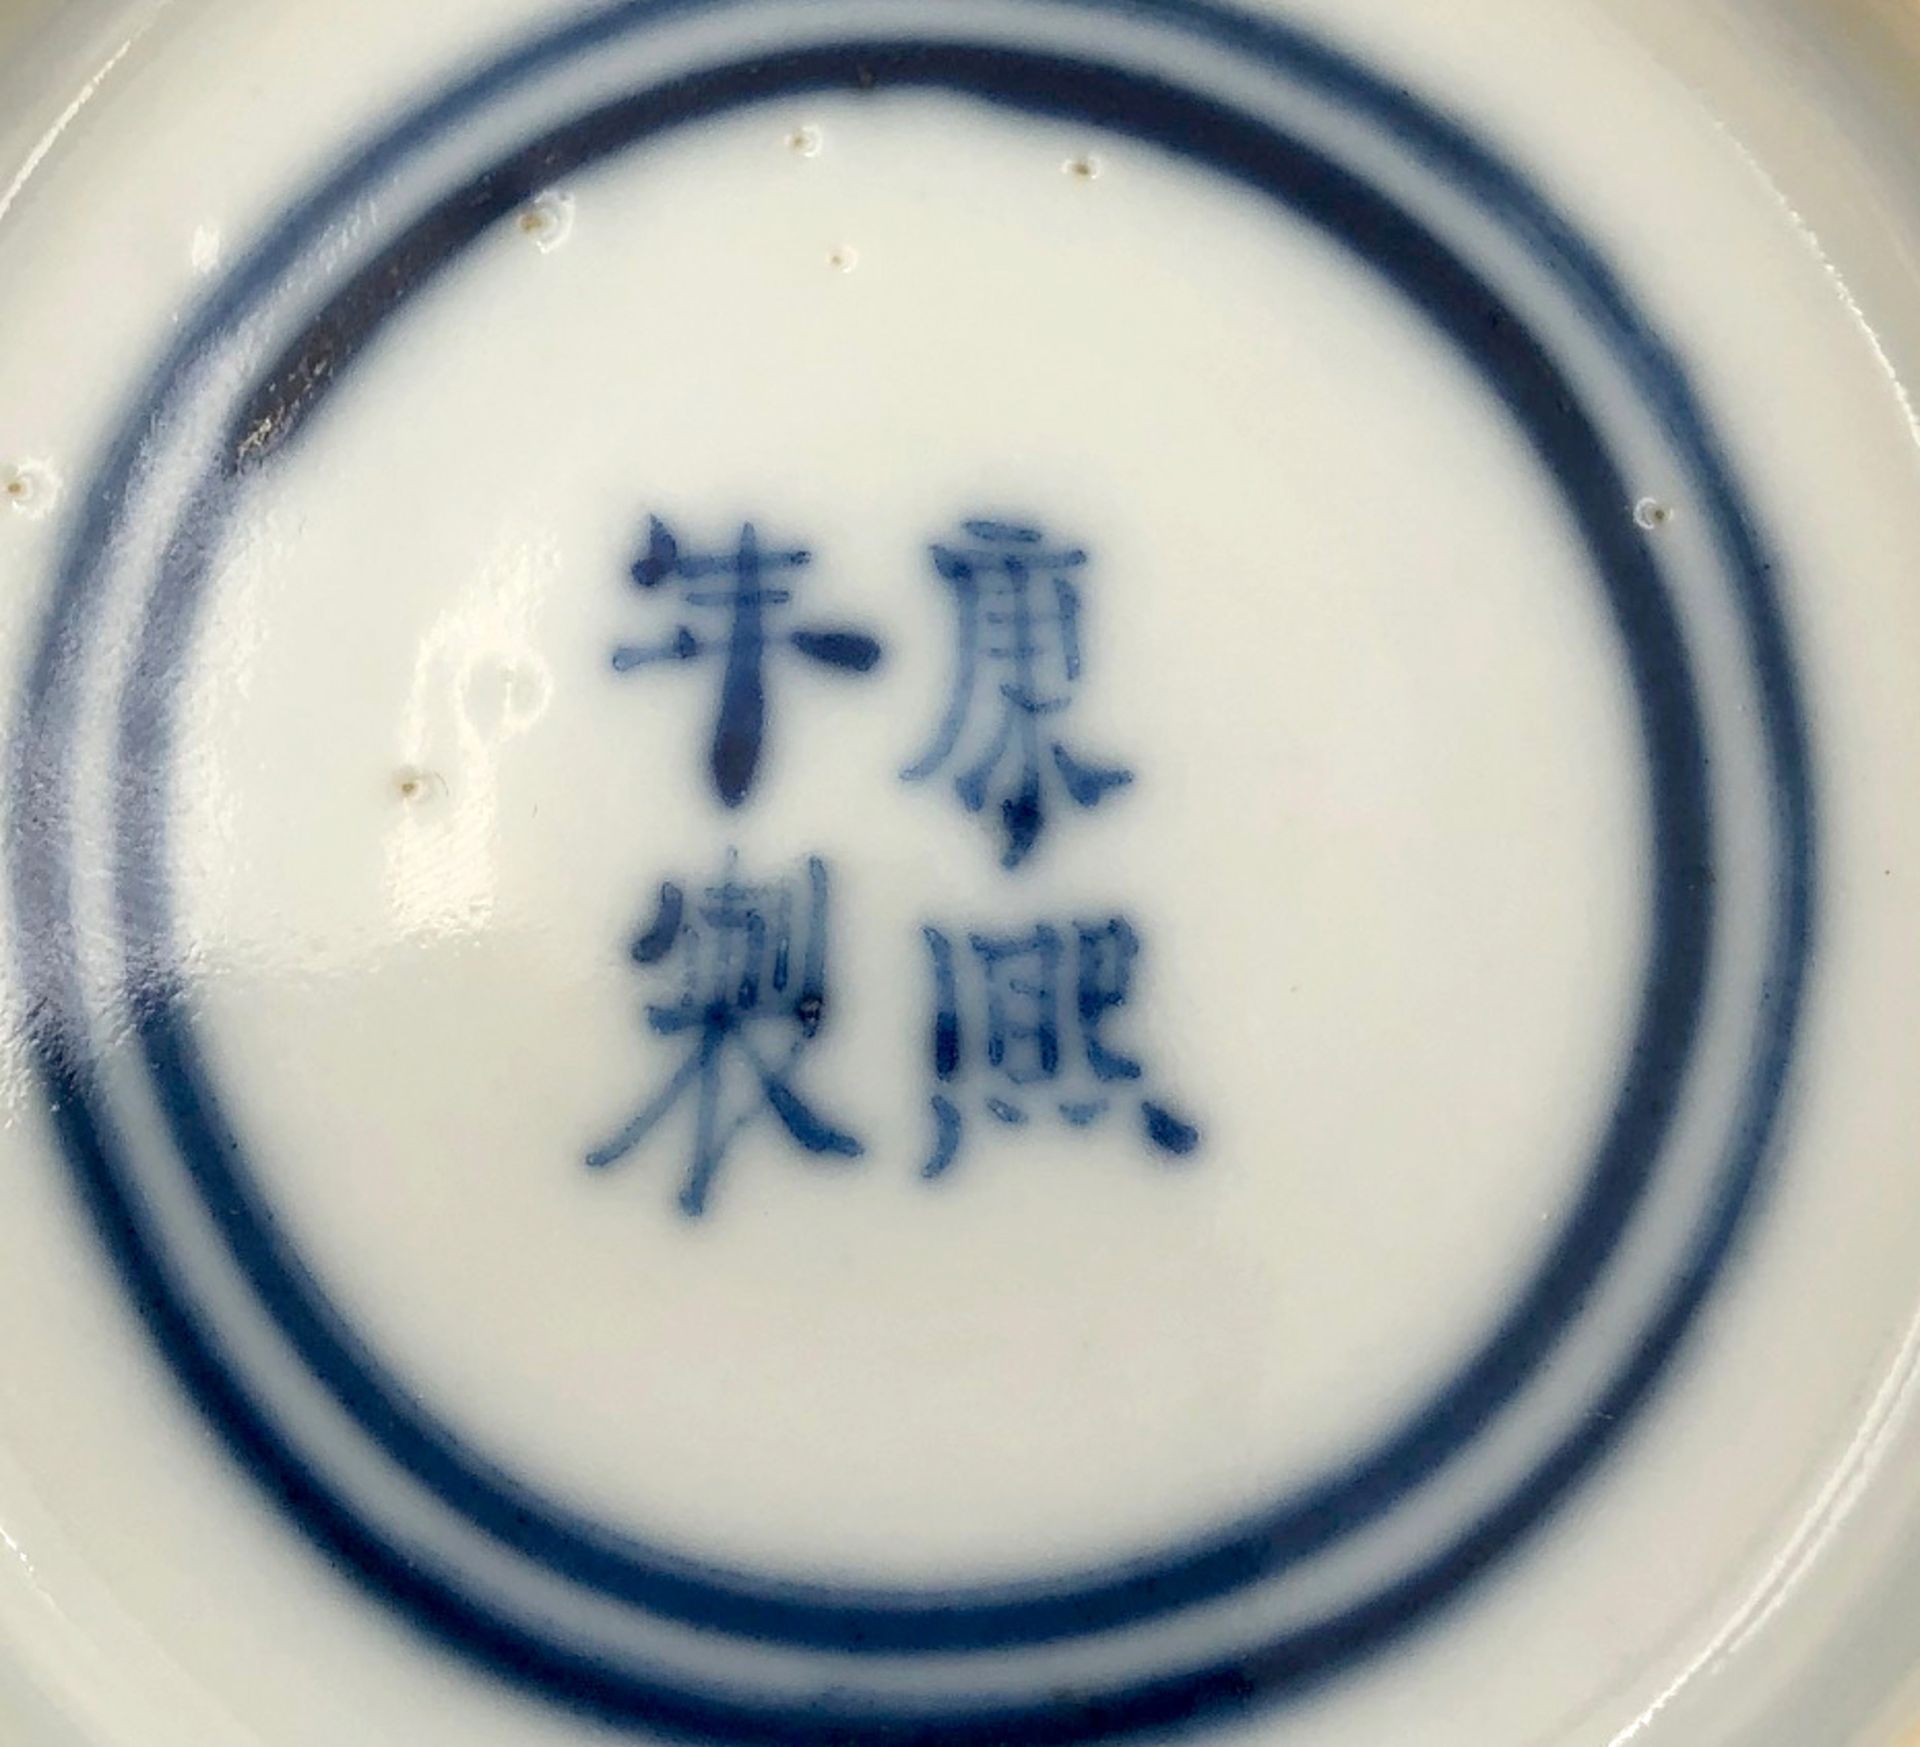 Kleiner Teller Blau - Weiss Porzellan mit Blumen. Wohl China / Japan alt.11,2 cm Durchmesser, 2 cm - Bild 4 aus 6